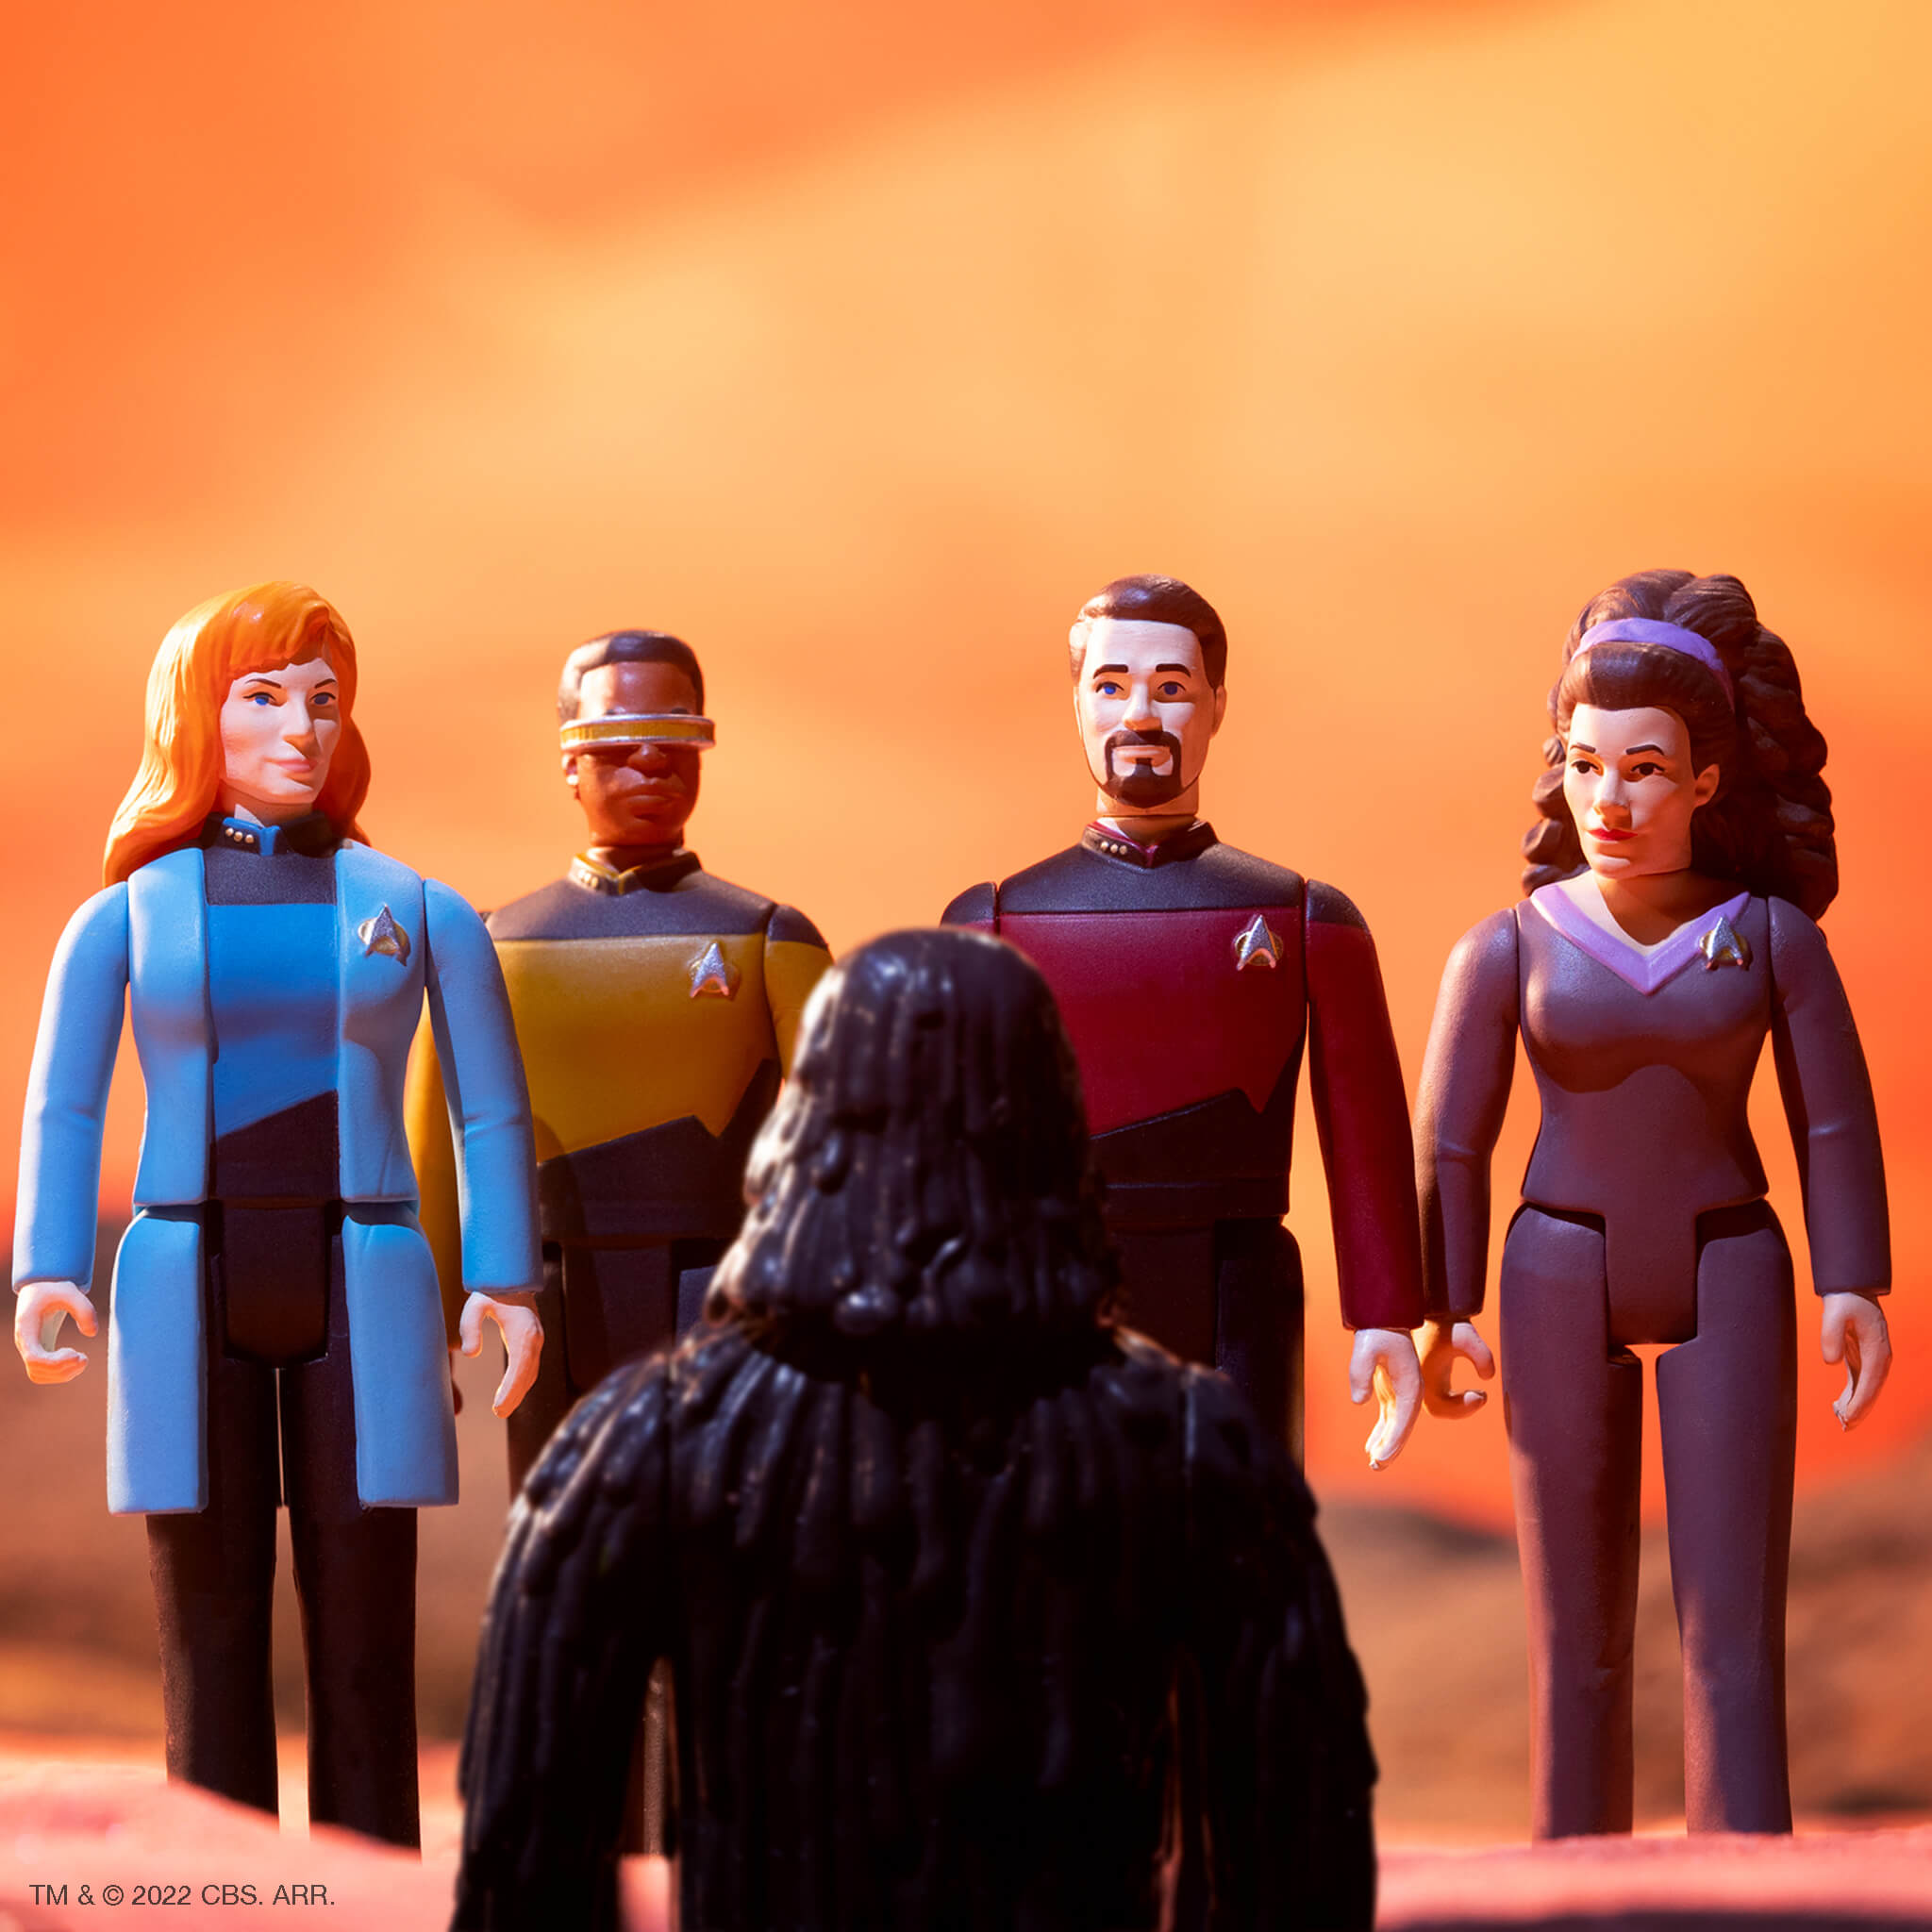 Star Trek: The Next Generation ReAction - Captain Picard Transporter (Glitter)